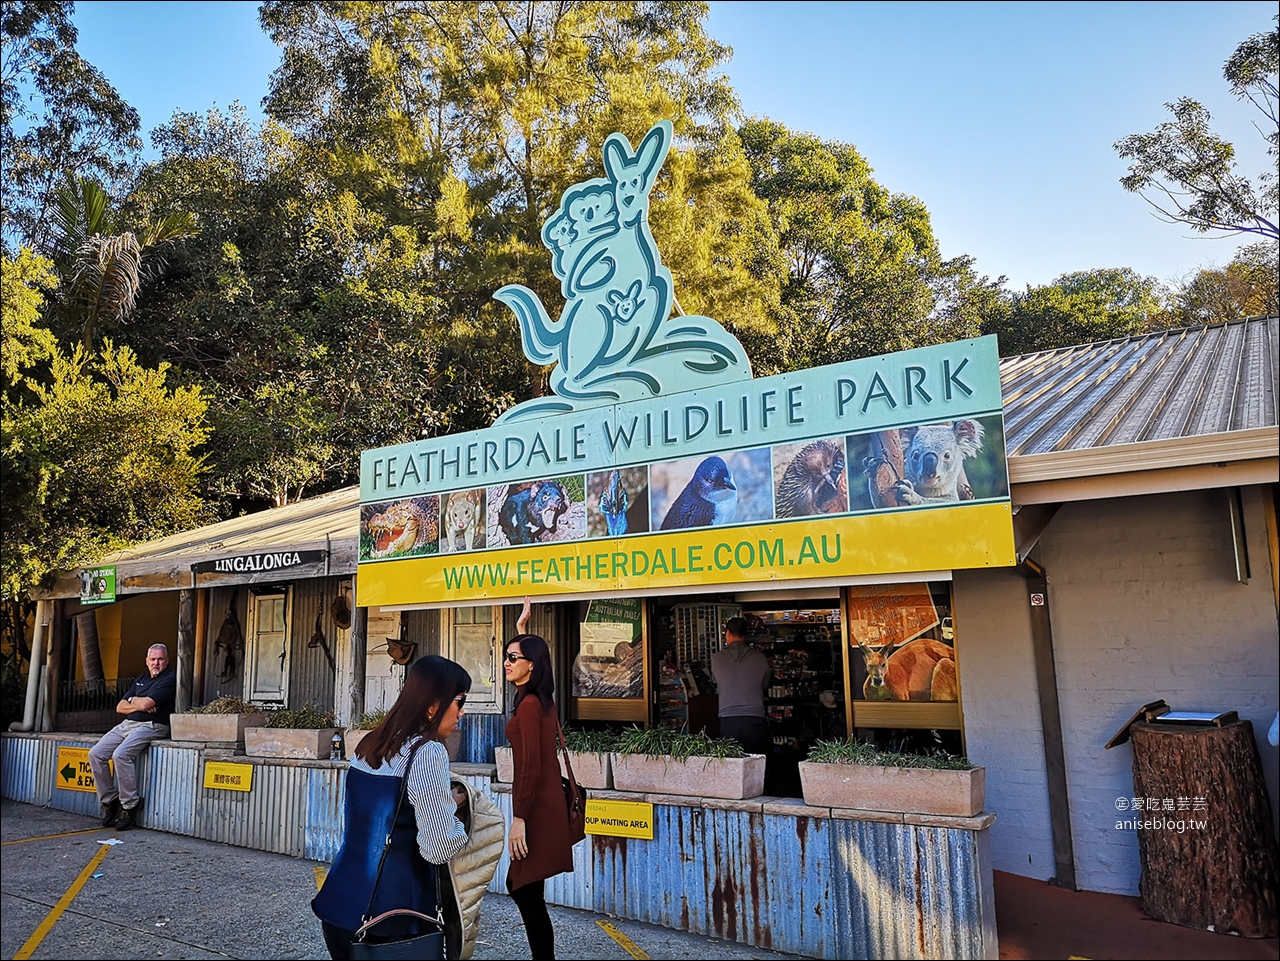 雪梨景點 | 藍山國家公園一日遊 ( 景觀世界纜車、三姐妹峰、蘿拉小鎮、野生動物園 )